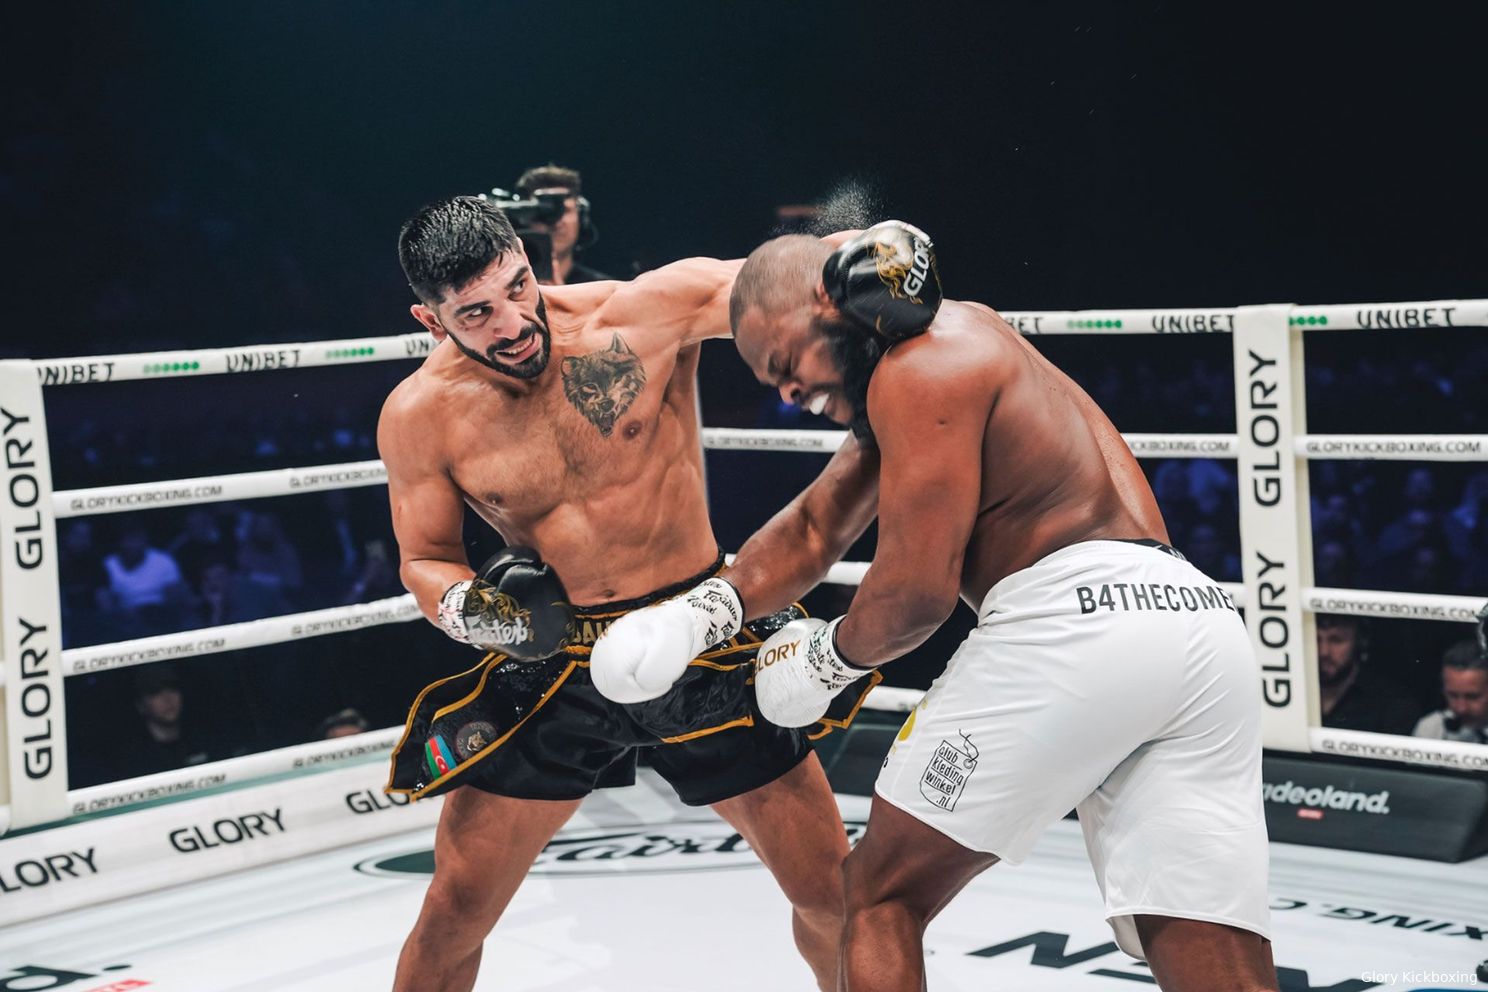 Glory's Rajabzadeh doet stap terug in gevecht met Oumar